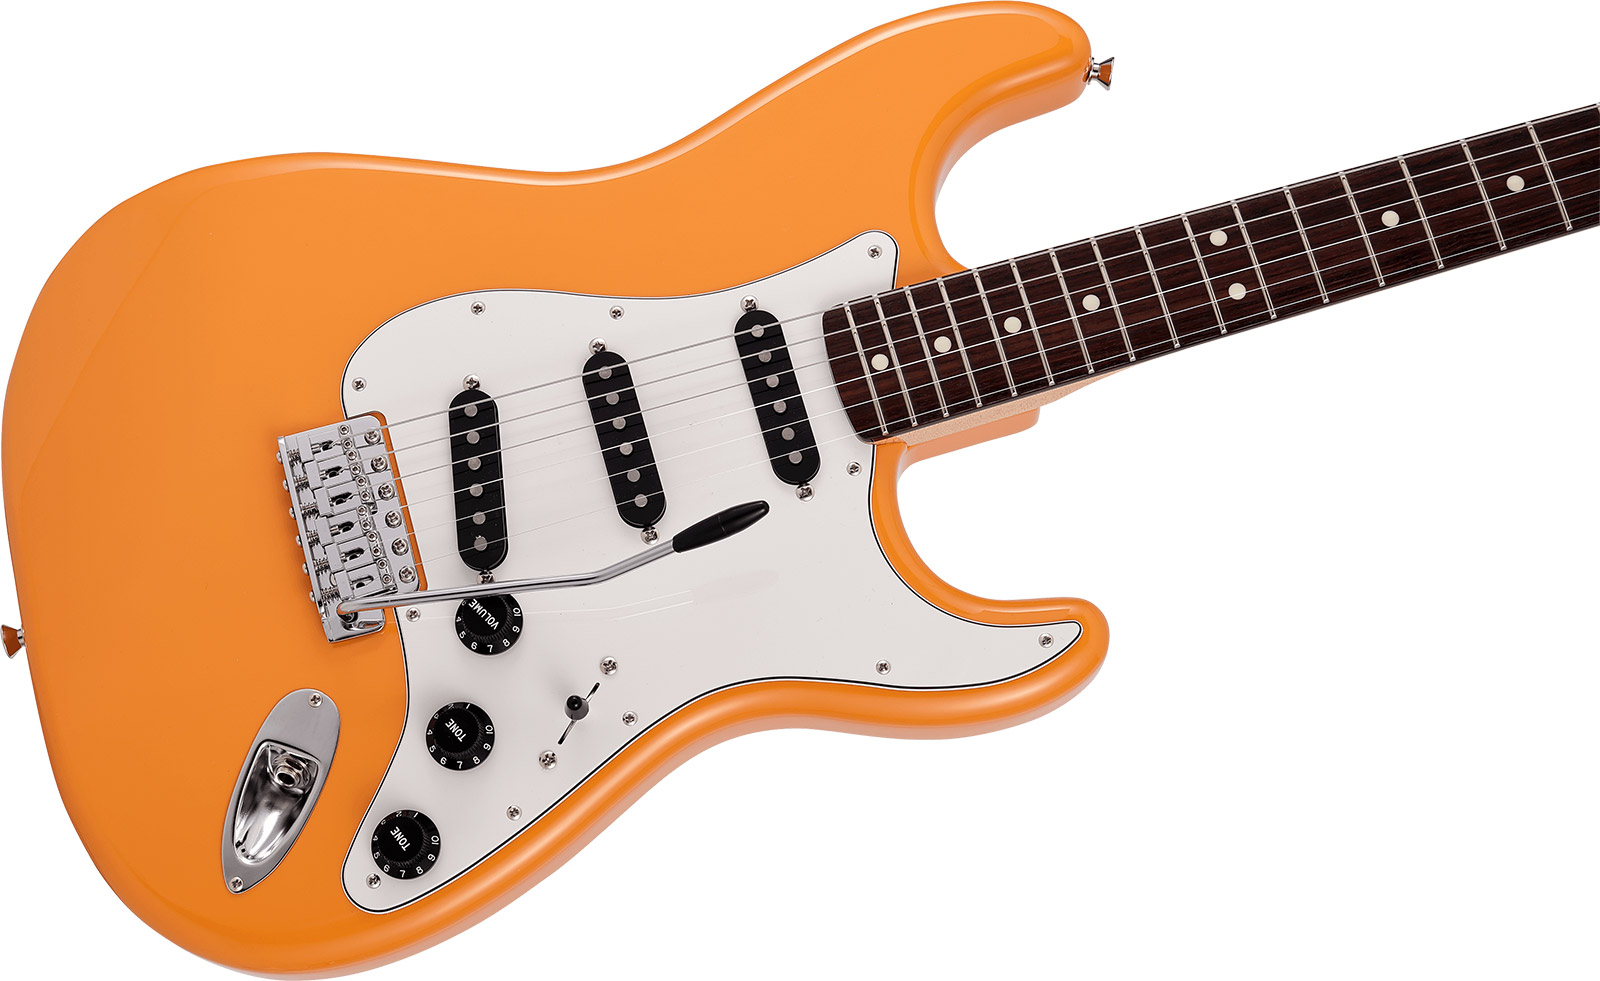 Fender Strat International Color Ltd Jap 3s Trem Rw - Capri Orange - Str shape electric guitar - Variation 2